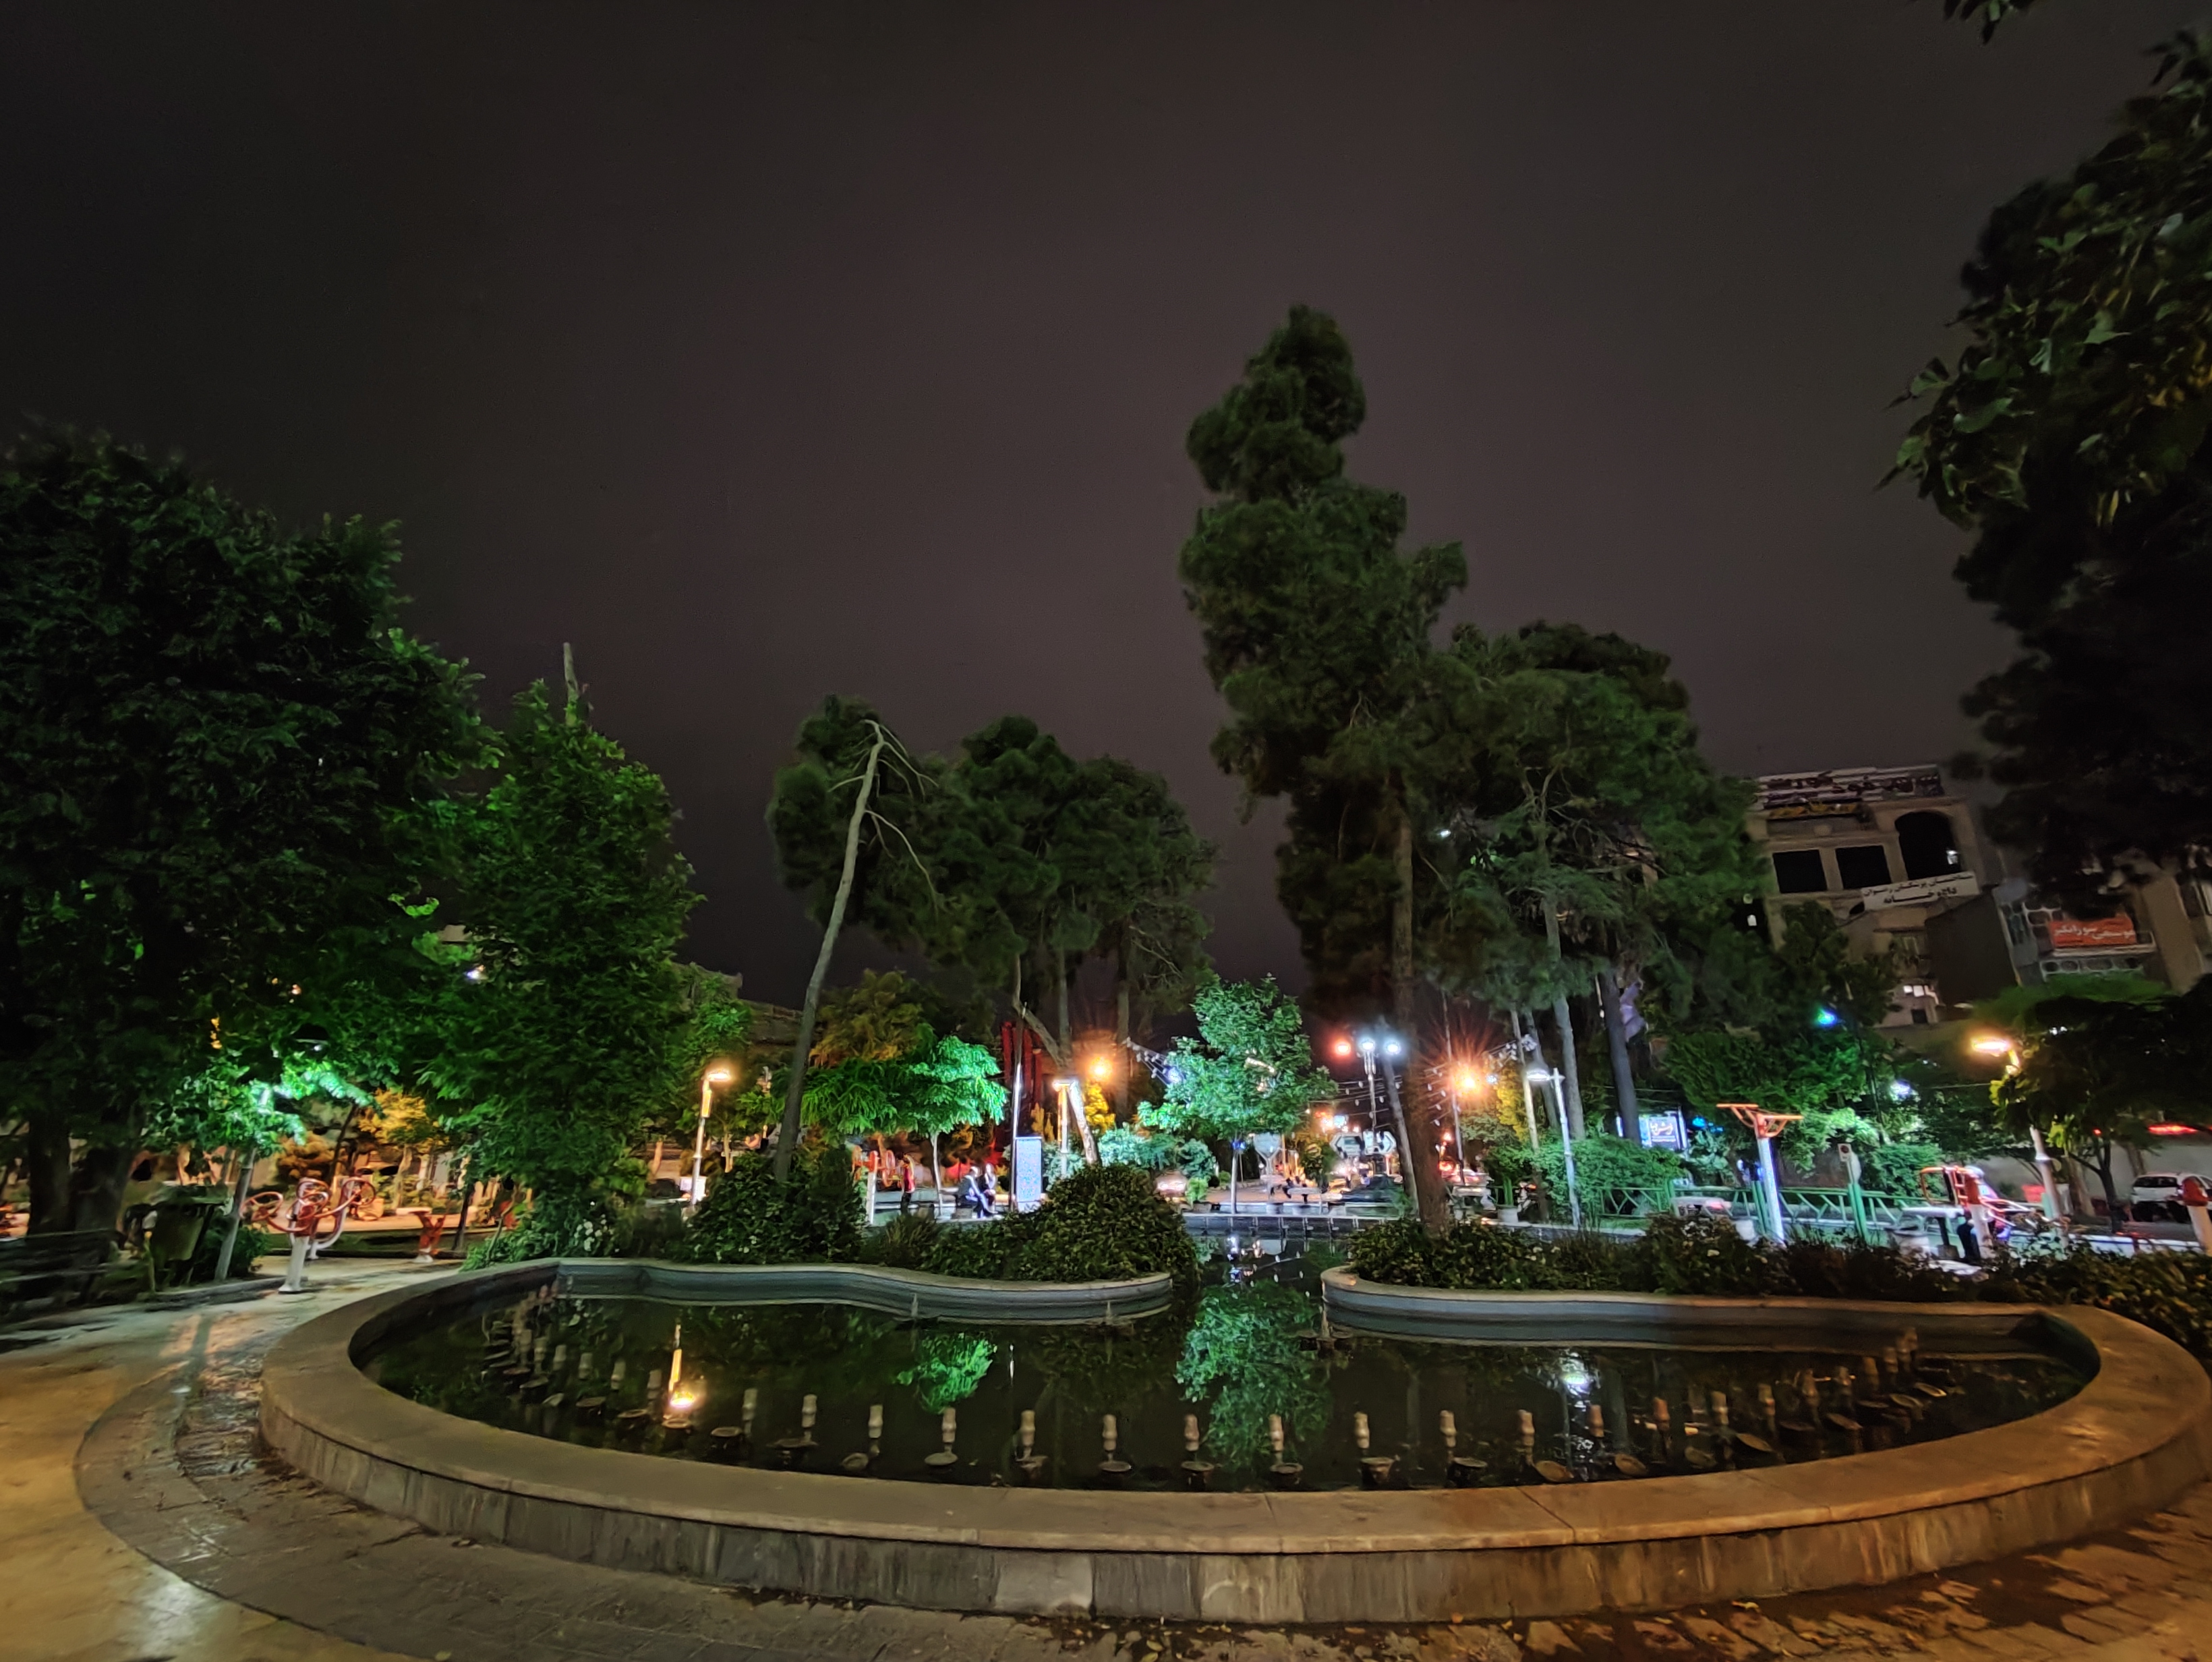 نمونه عکس دوربین فوق عریض می ۱۱ لایت در محیط تاریک - فواره و حوض در پارک میدان هفت حوض